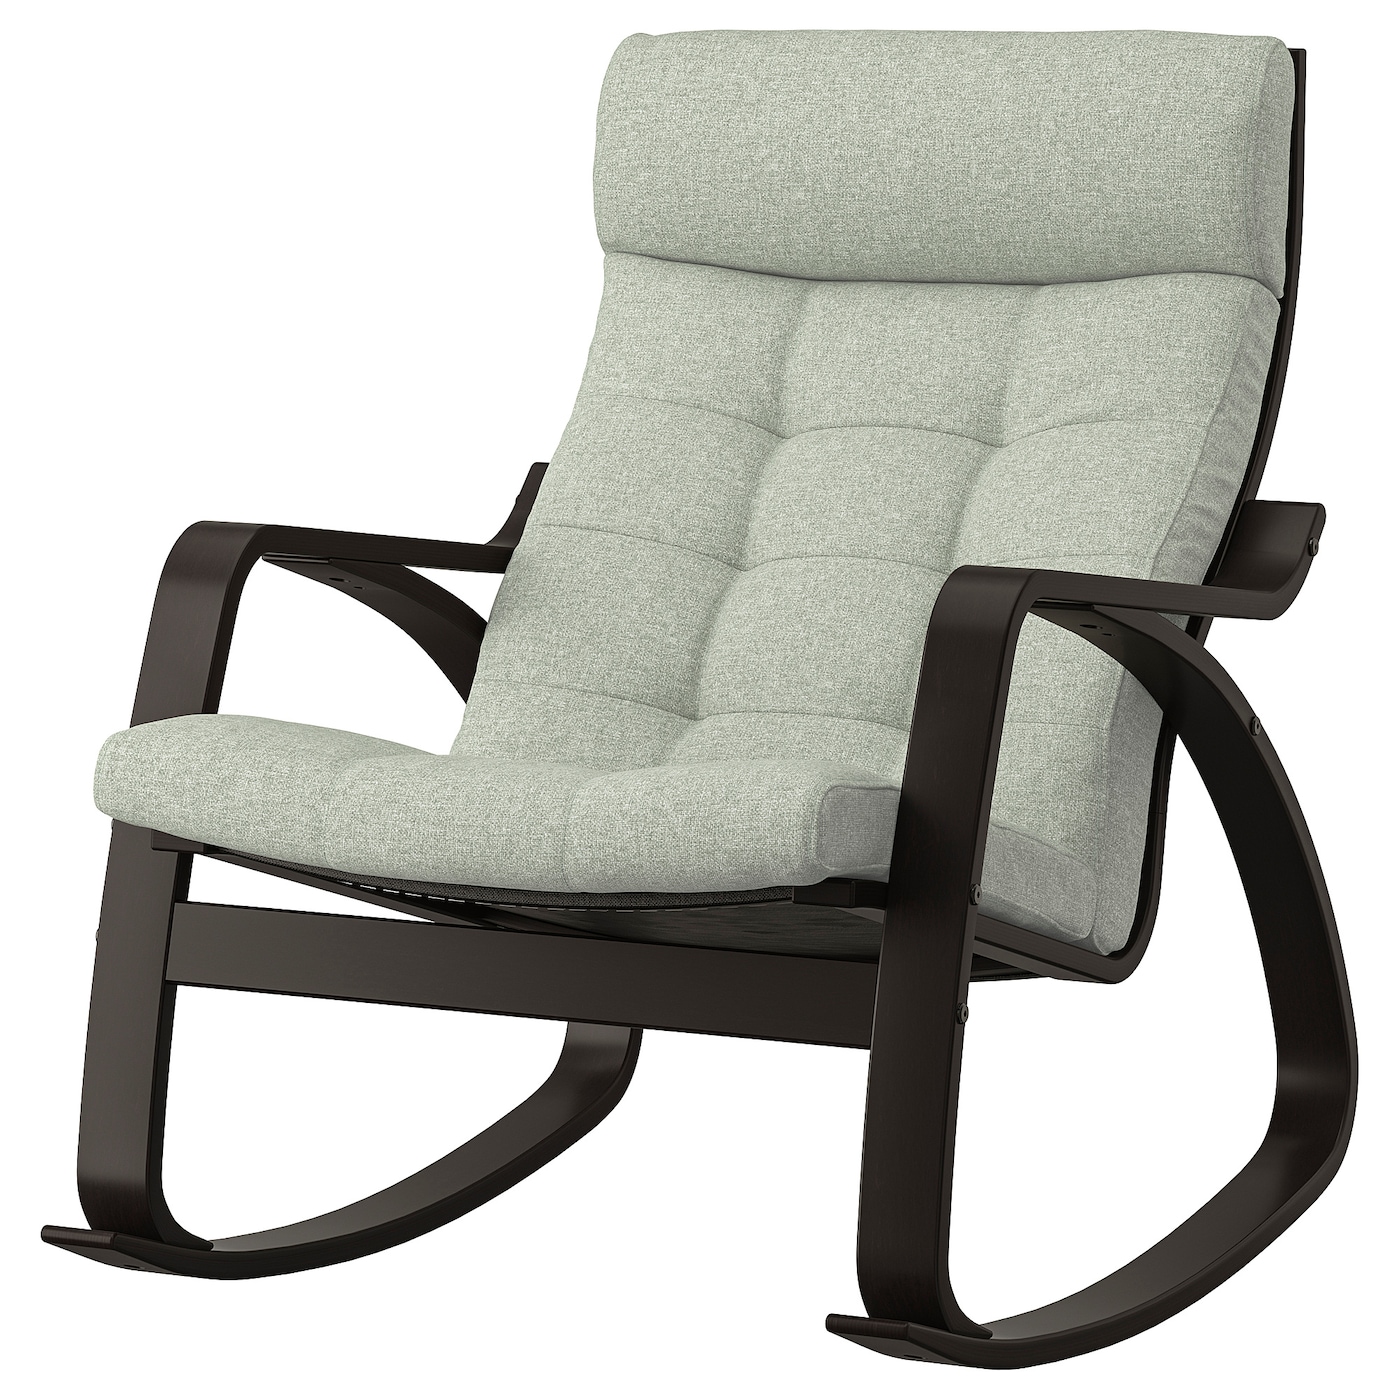 ПОЭНГ Кресло-качалка, черно-коричневый/Гуннаред светло-зеленый POÄNG IKEA кресло качалка remington rocking сhair relaxing rm2026